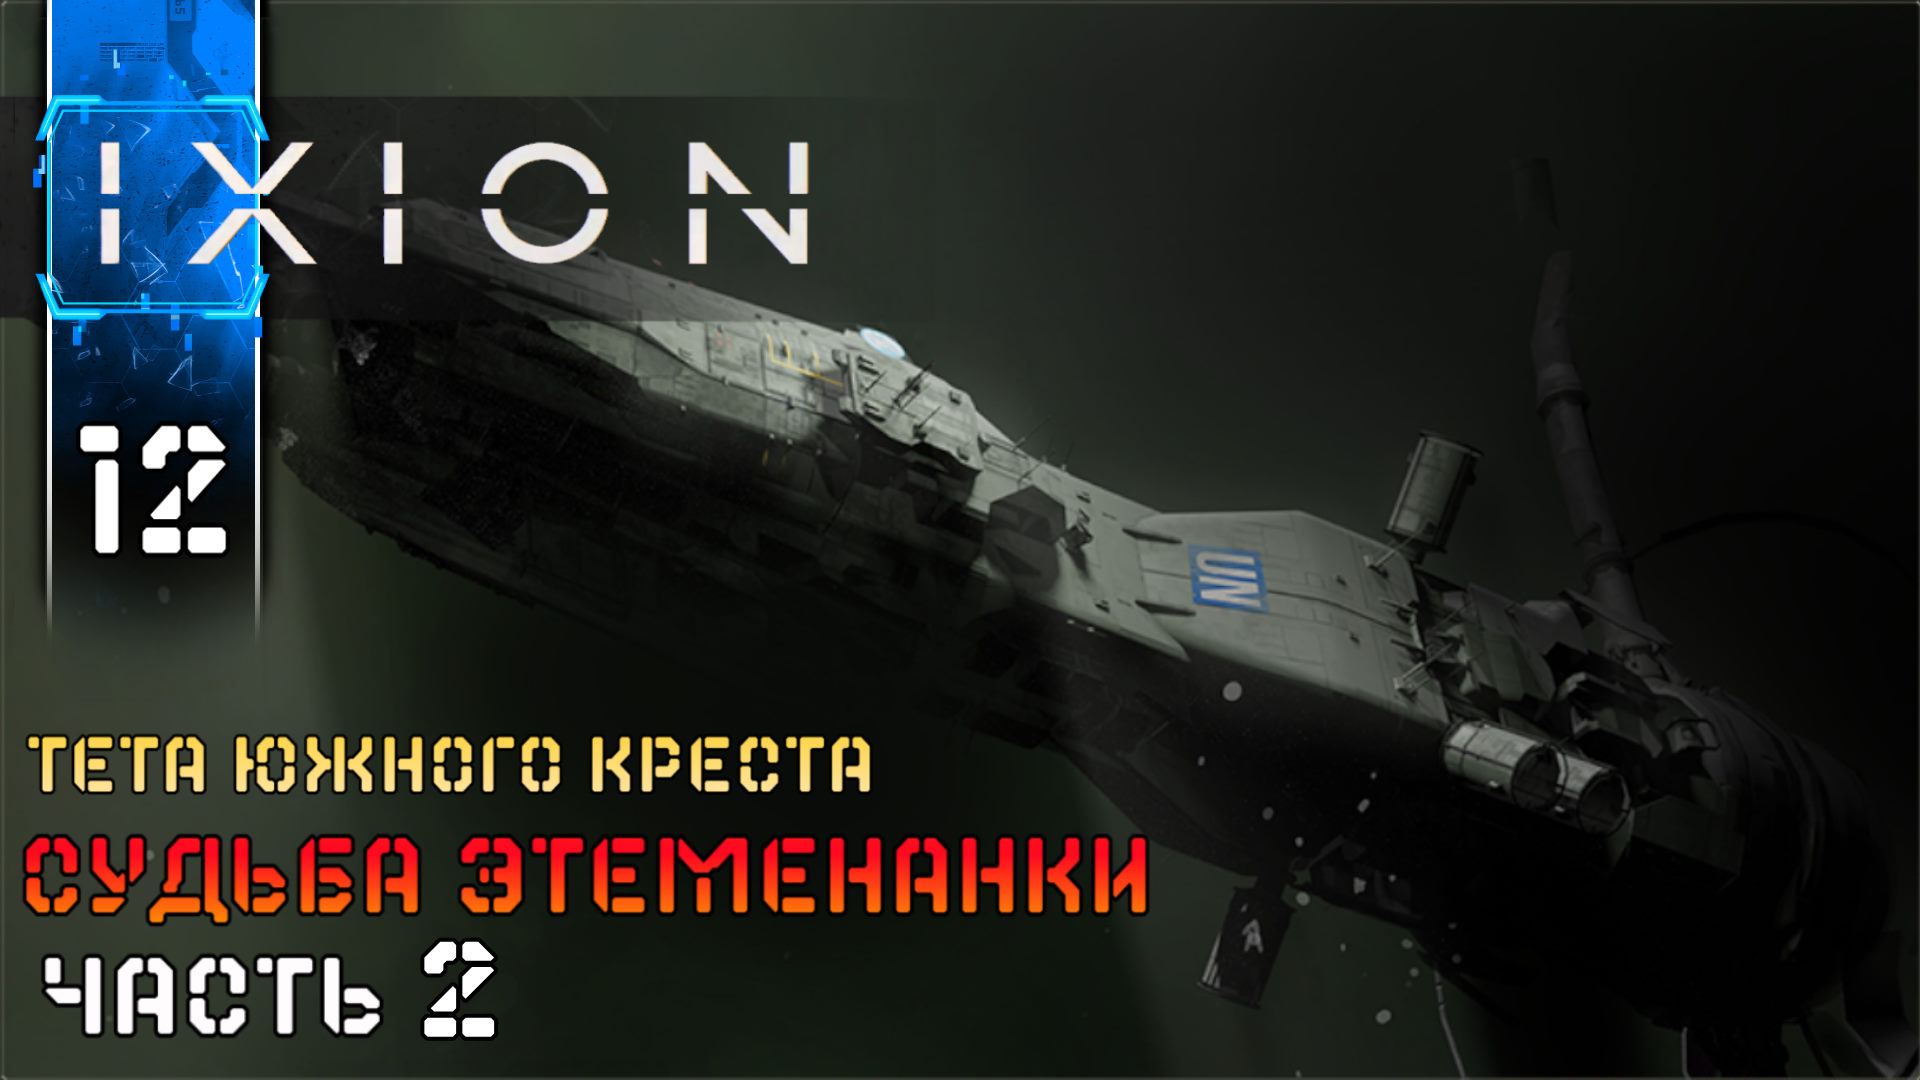 IXION (12) Судьба Этеменанки ч2 Полное Прохождение игры (ИКСИОН) на Русском Геймплей Стратегия